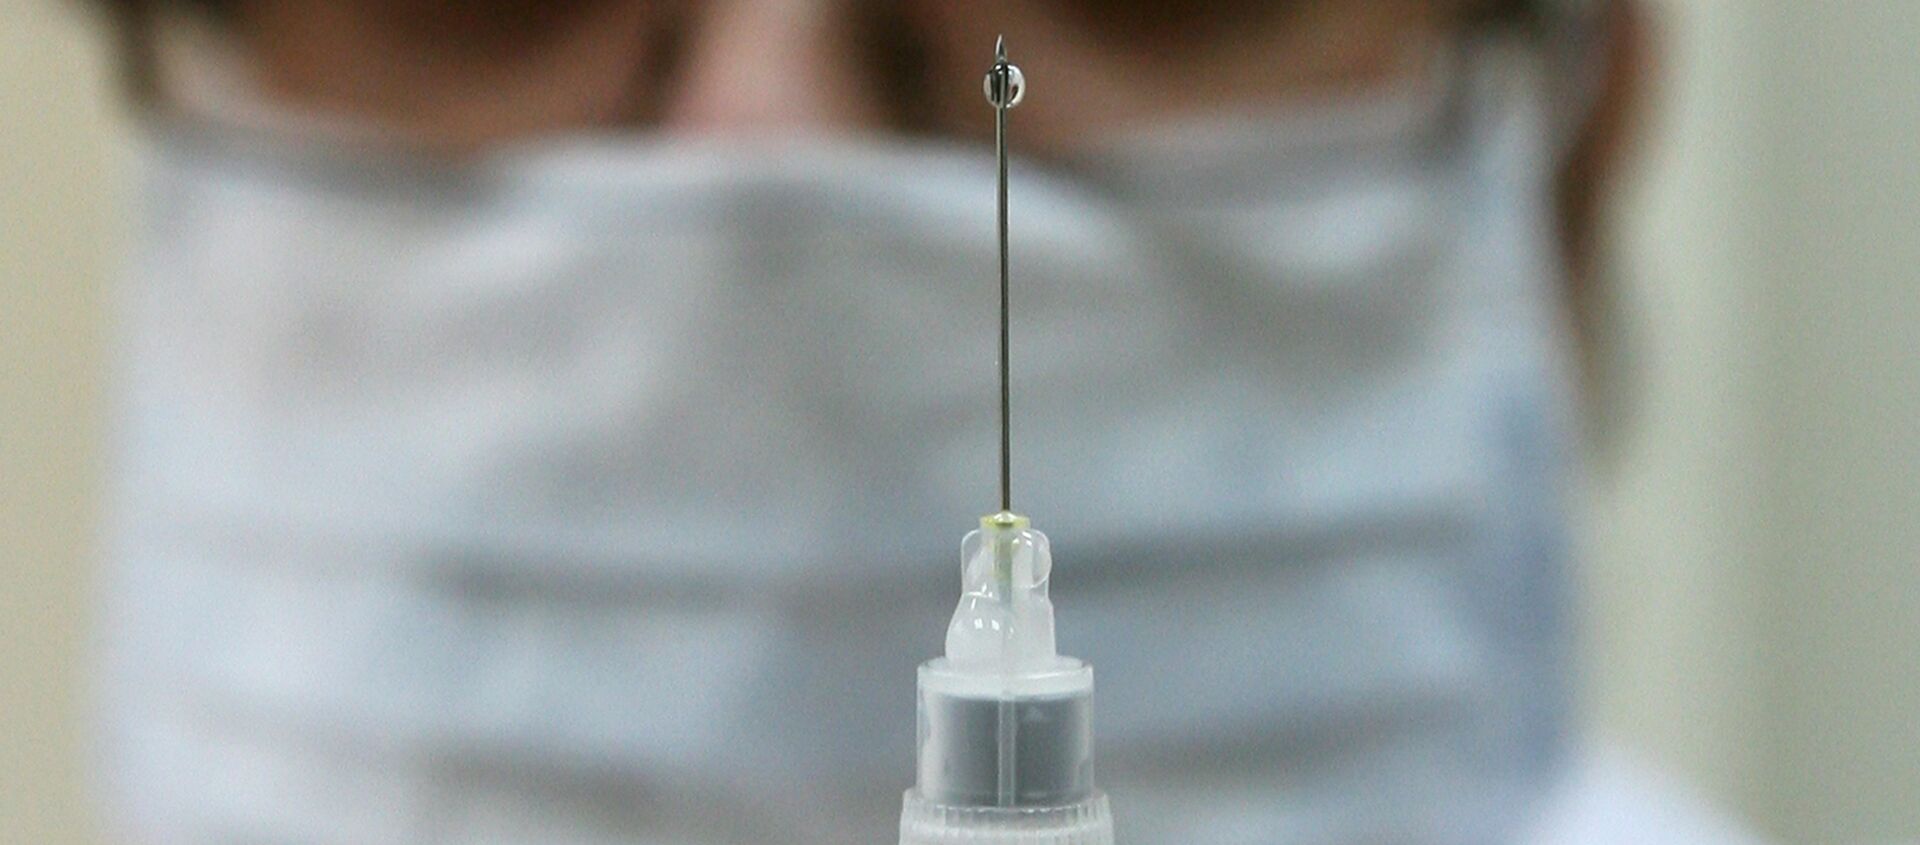 Las vacunas innovadoras rusas conquistan a Irán - Sputnik Mundo, 1920, 05.10.2016